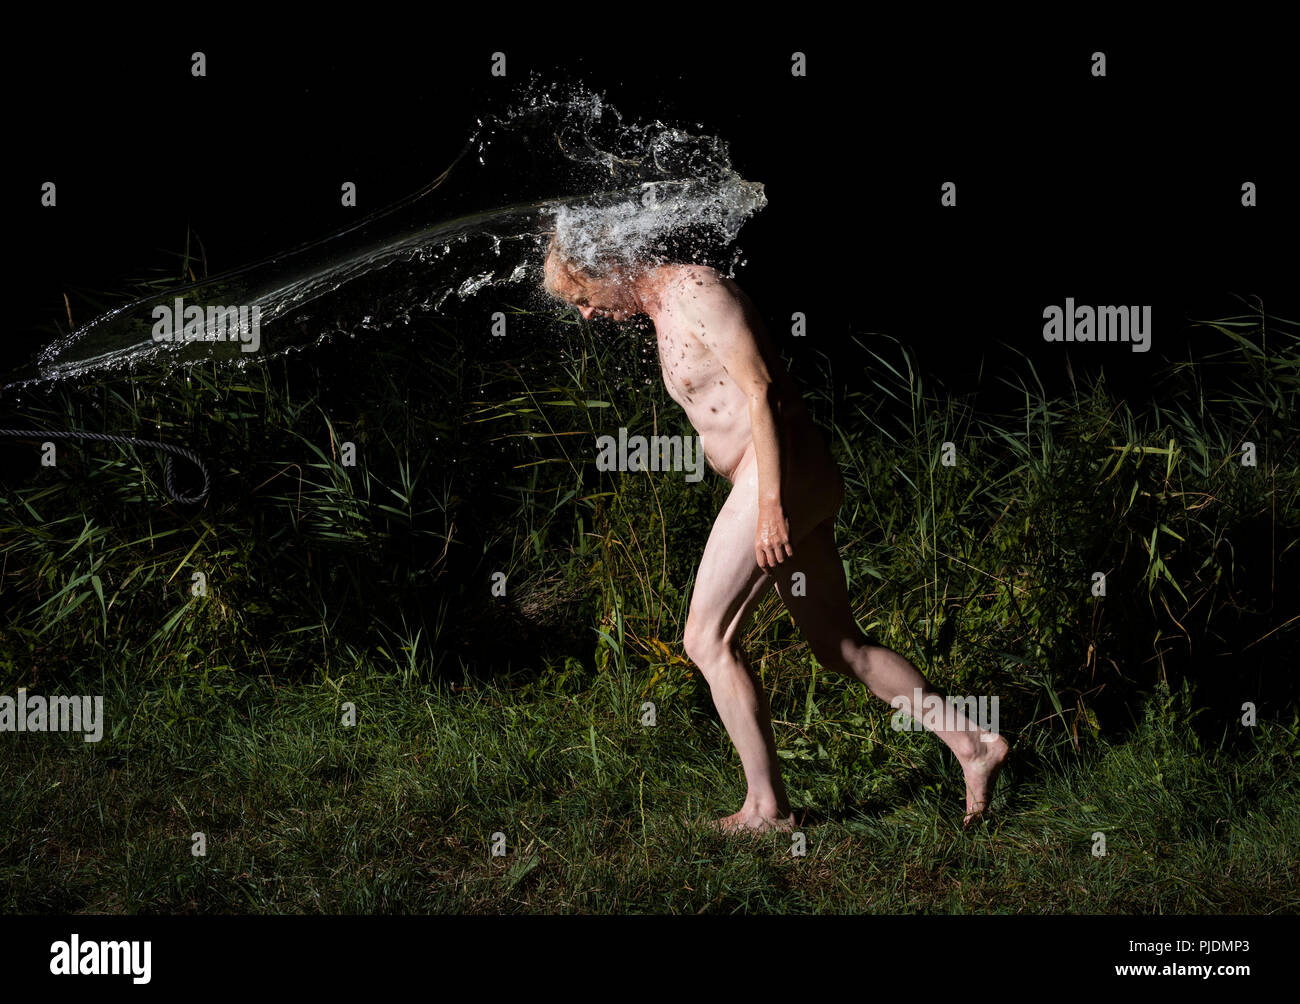 Nudo uomo riceve acqua gettata su di lui il calore della notte Foto Stock